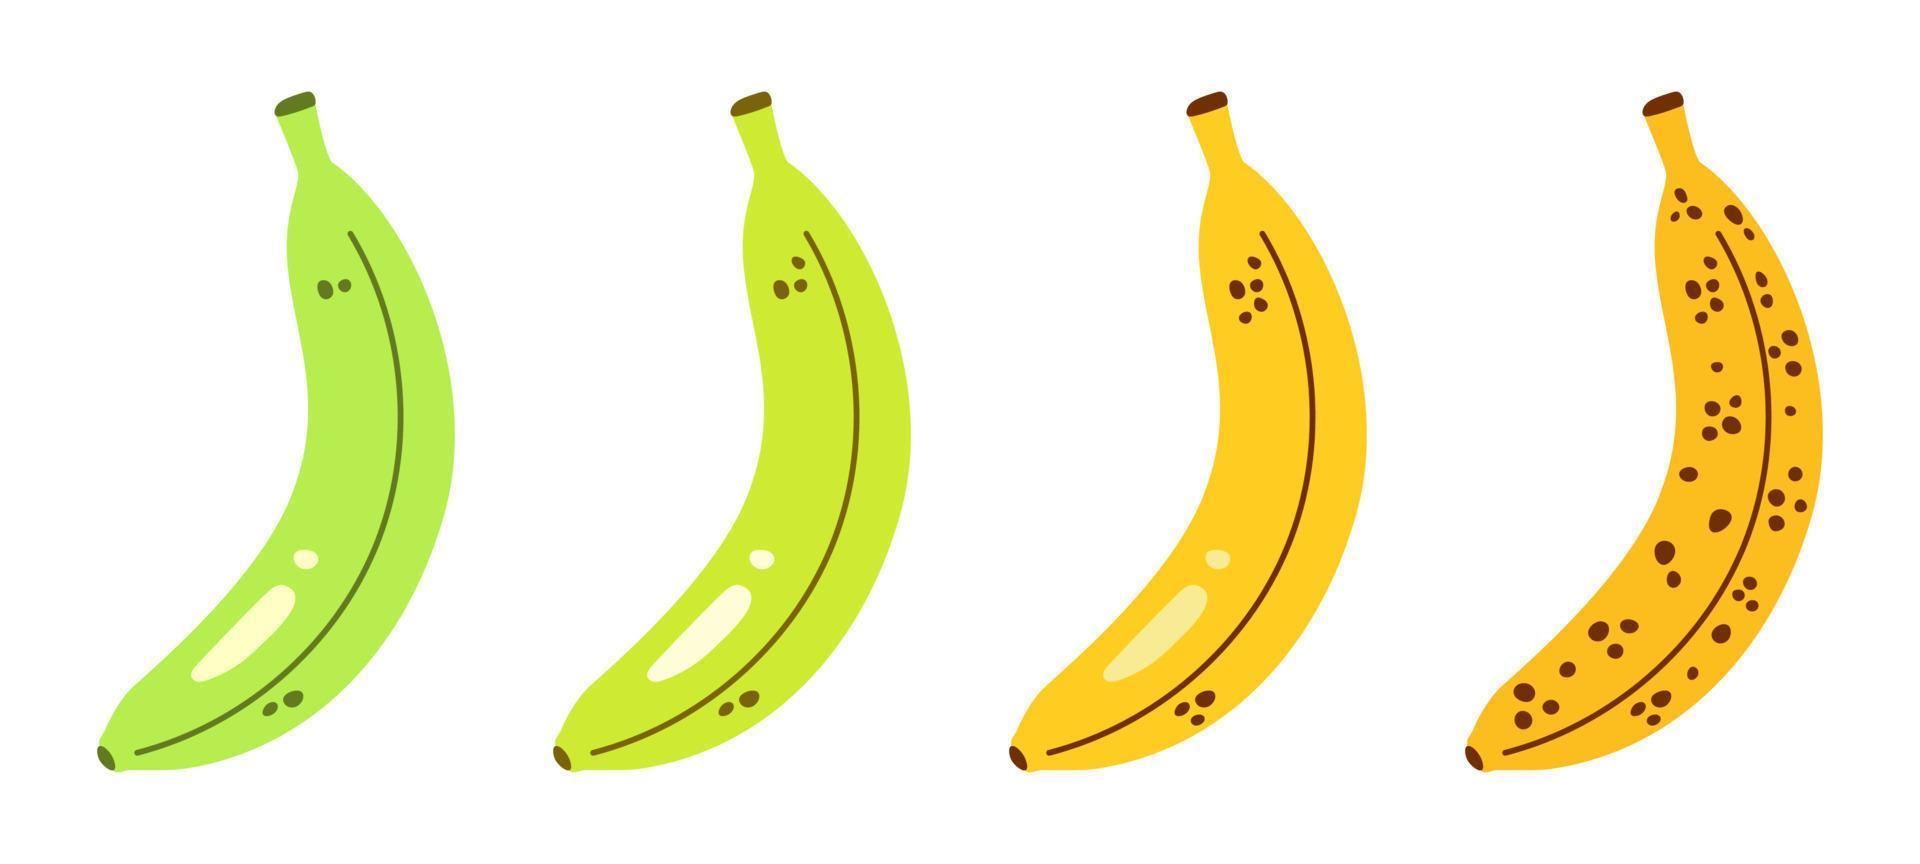 vektor set med bananer. mogna stadier av bananer från omogna till övermogna. mognadsprocessen för bananer. gröna och gula bananer i platt design.